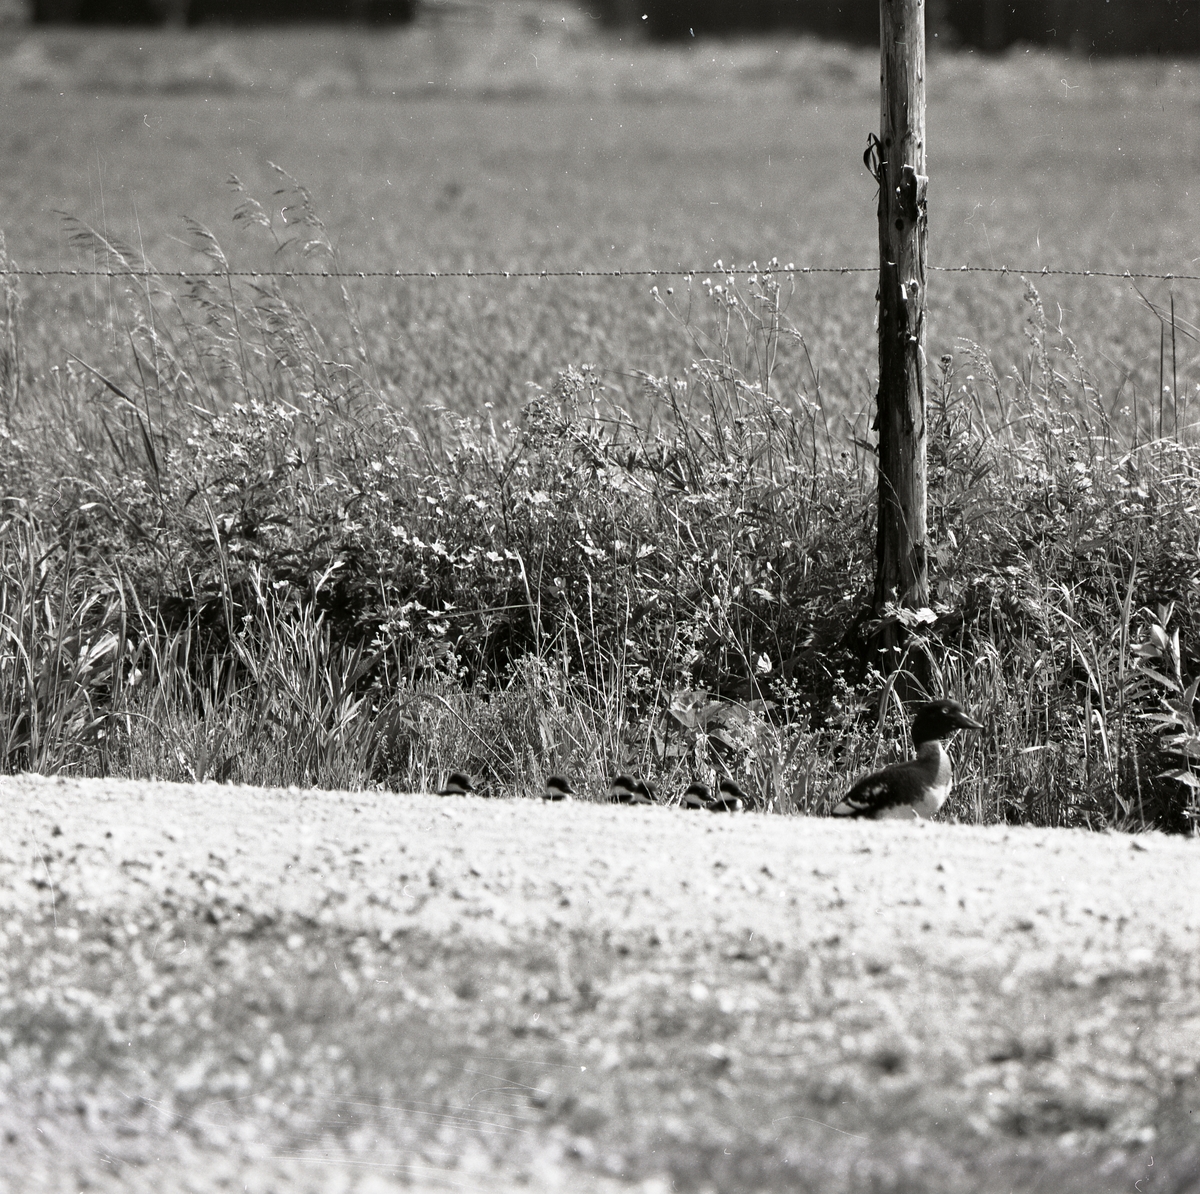 En knipa går med sina ungar vid sidan av en grusväg och i bakgrunden syns en inhägnad, juni 1975.